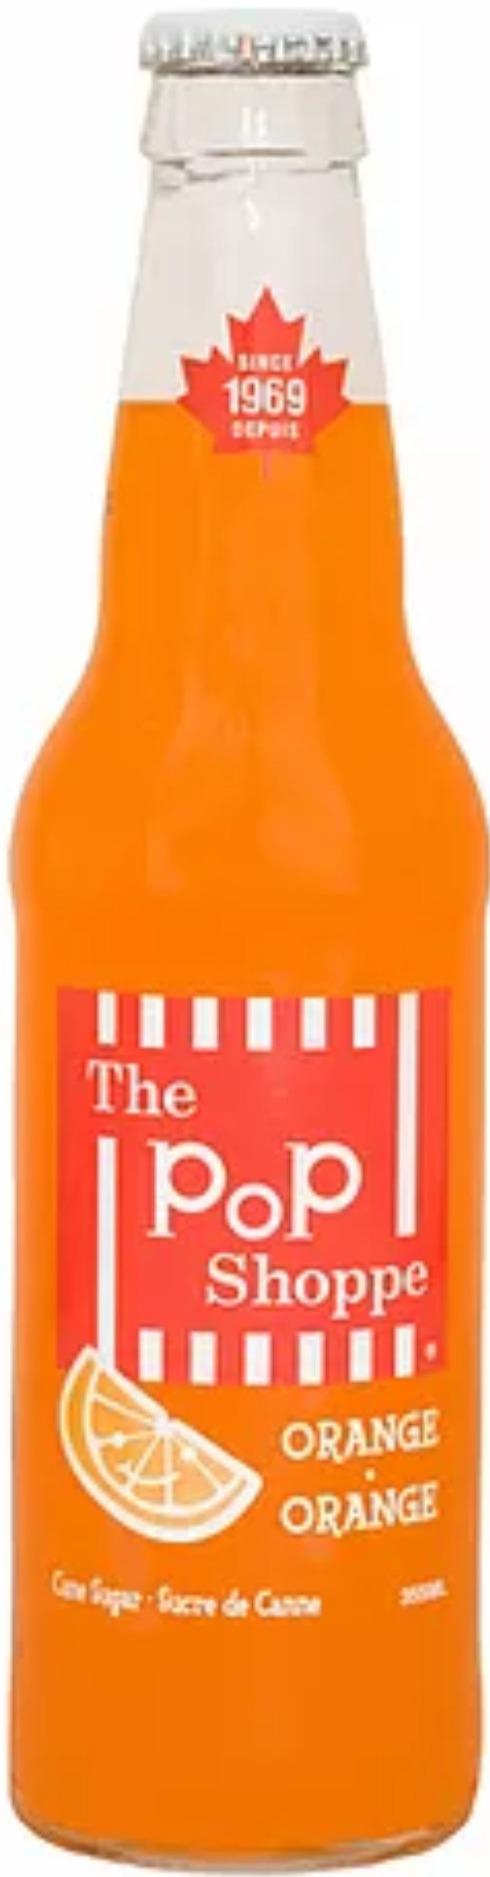 Pop Shoppe - Orange Soda - Glass Bottle